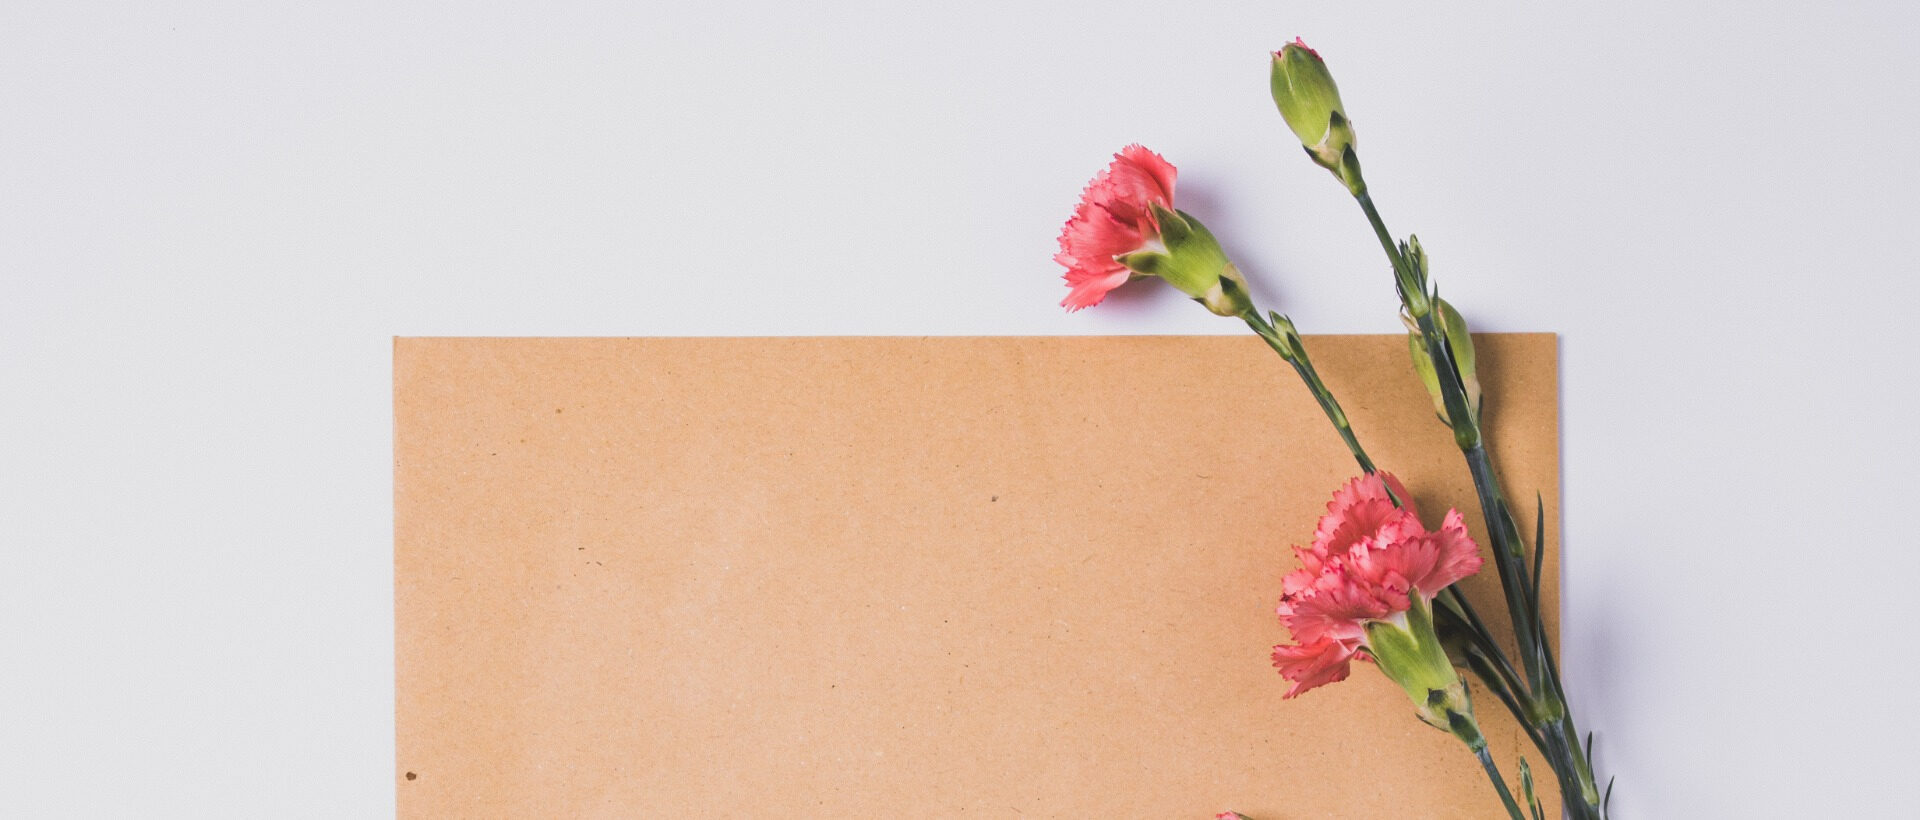 Ein braunes Stück Papier auf einem weissen Hintergrund, davor pinke Blumen